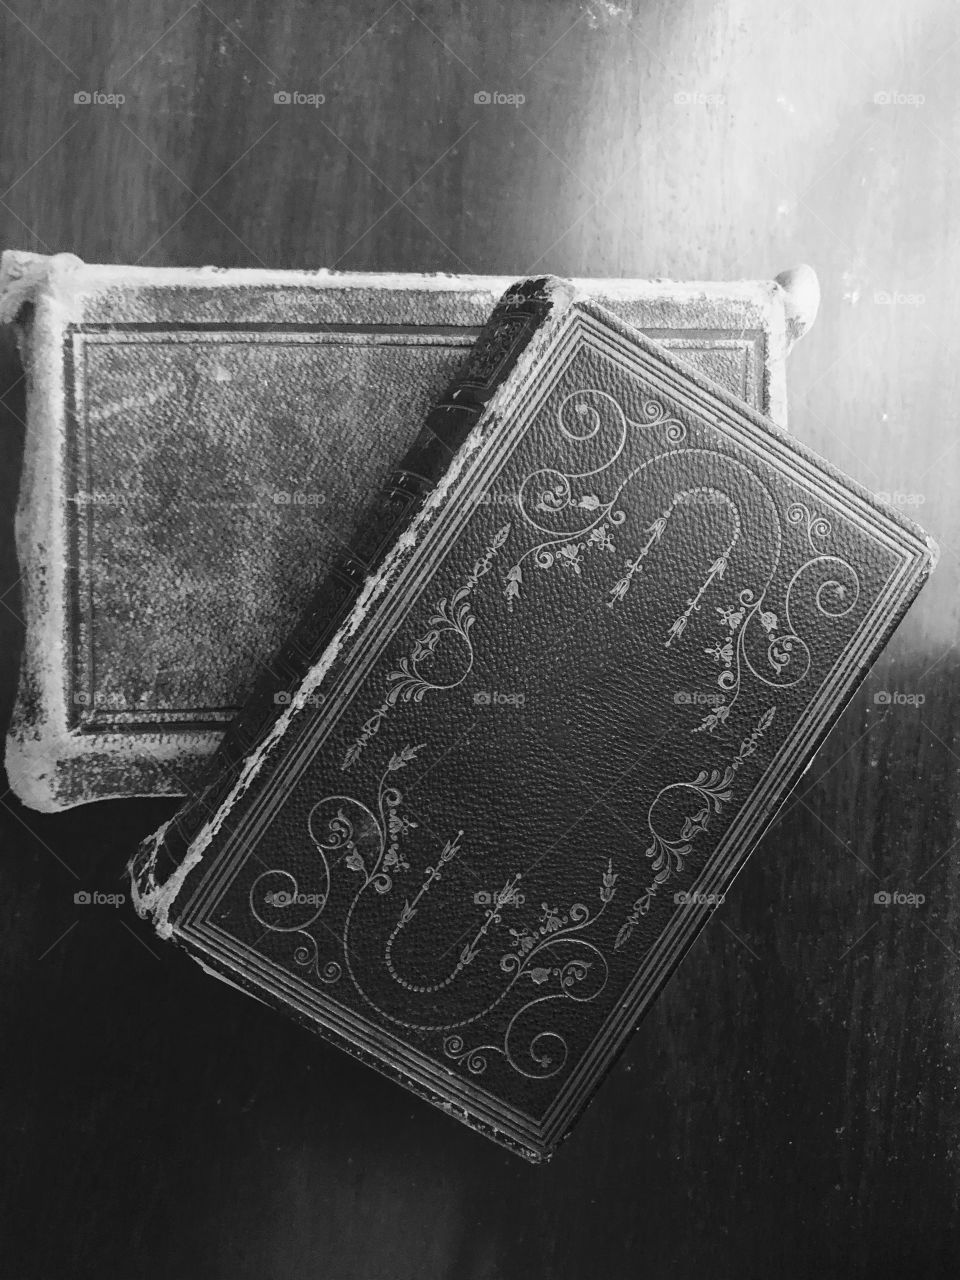 Vintage Bibles 